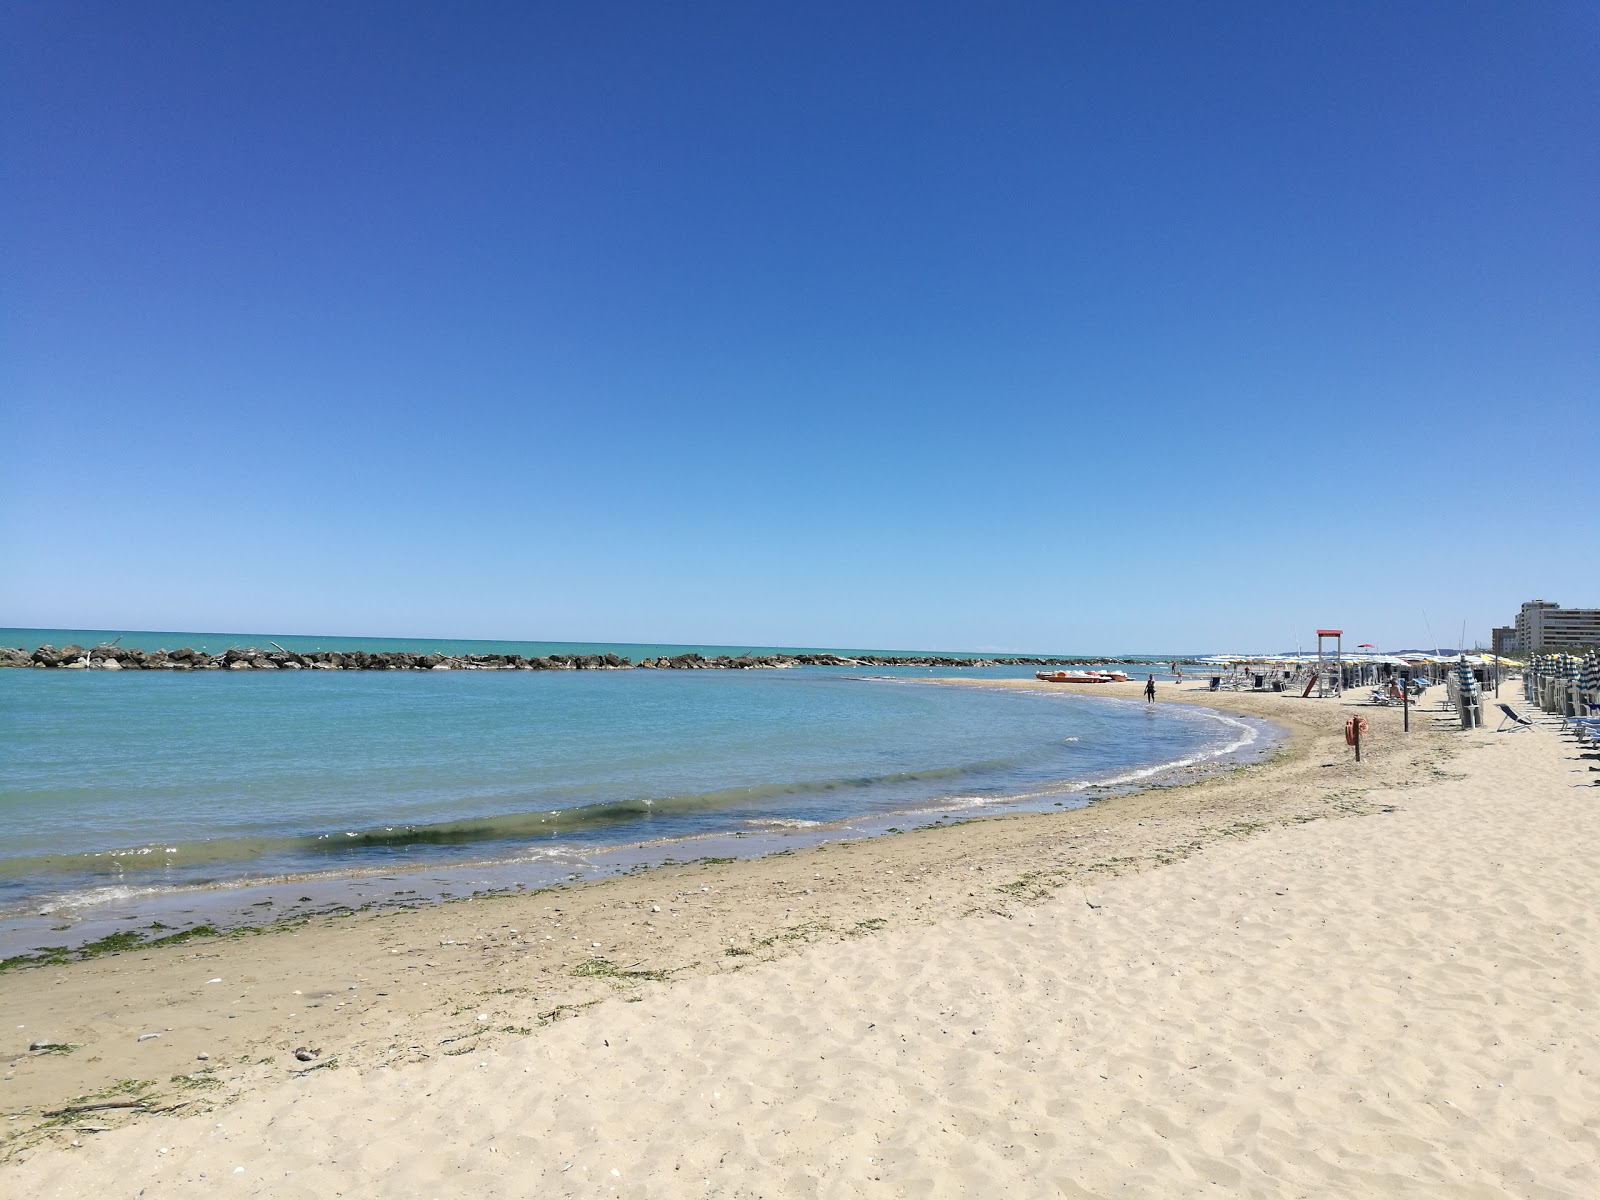 Spiaggia Montesilvano'in fotoğrafı plaj tatil beldesi alanı